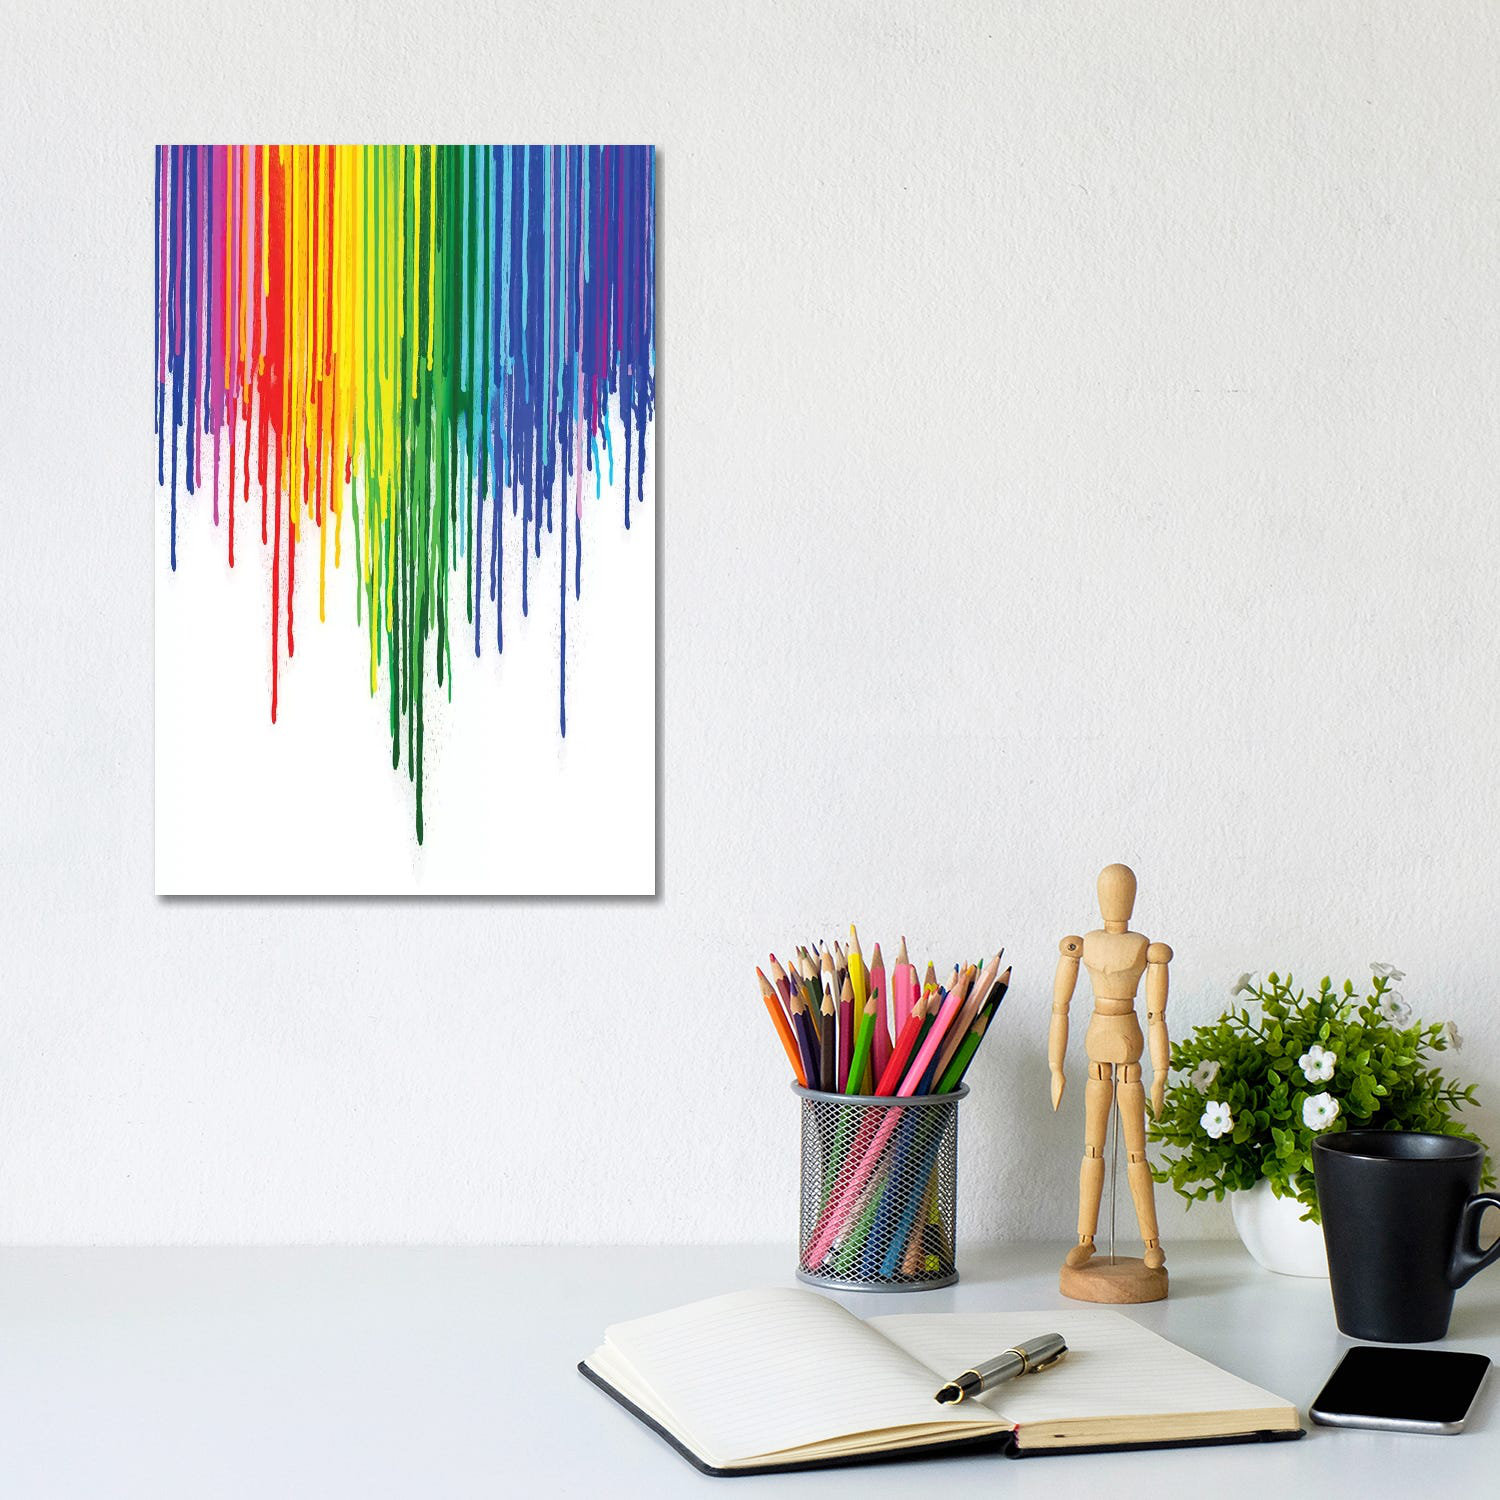 Unique Pride Month Art Ideas: 20 LGBT Pride Painting Ideas